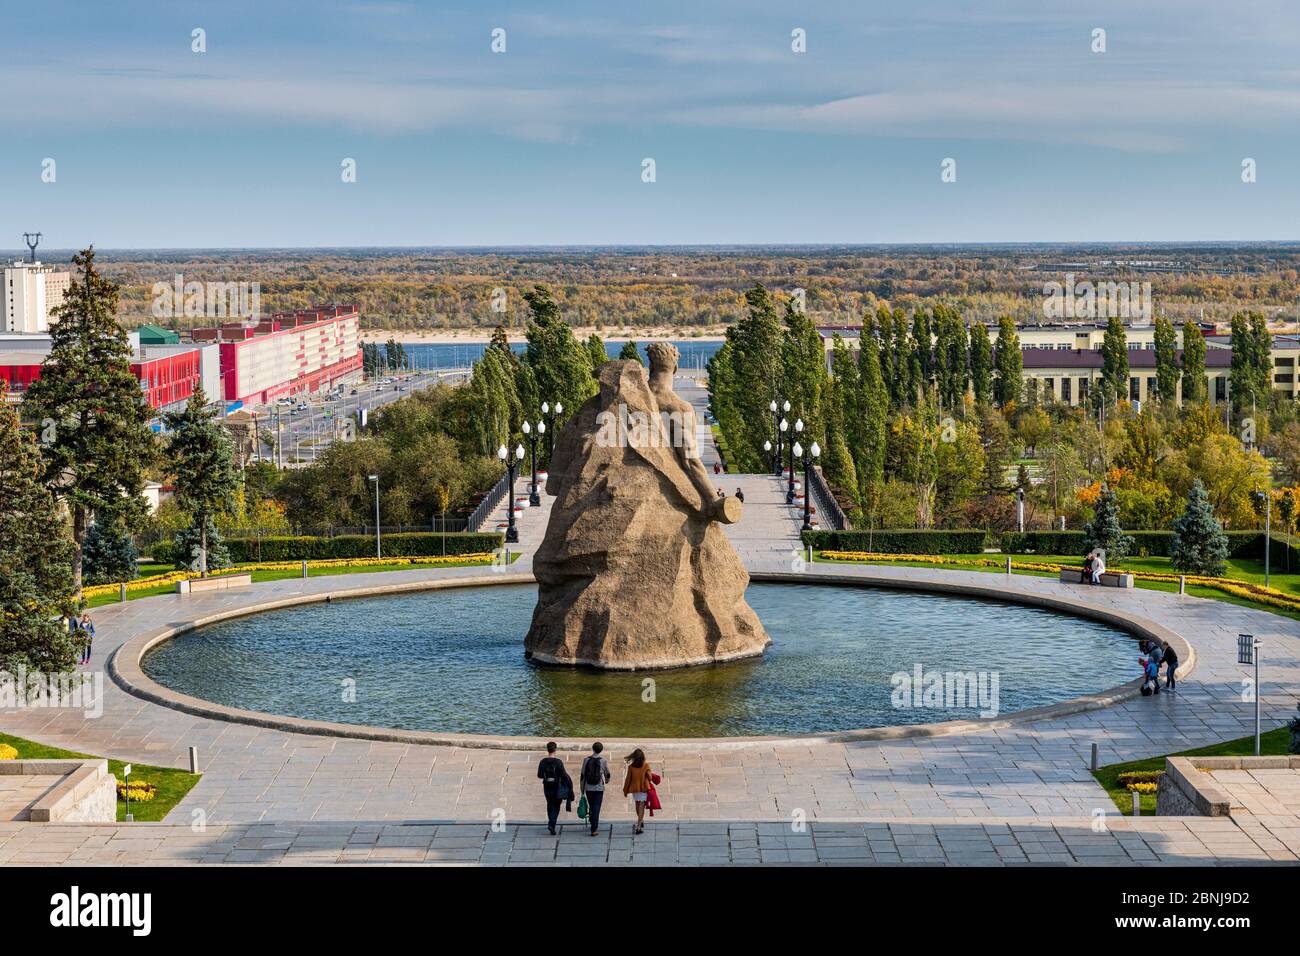 Enorme piscina con uno statuto gigante su Mamayev Kurgan, Volgograd, Oblast Volgograd, Russia, Eurasia Foto Stock